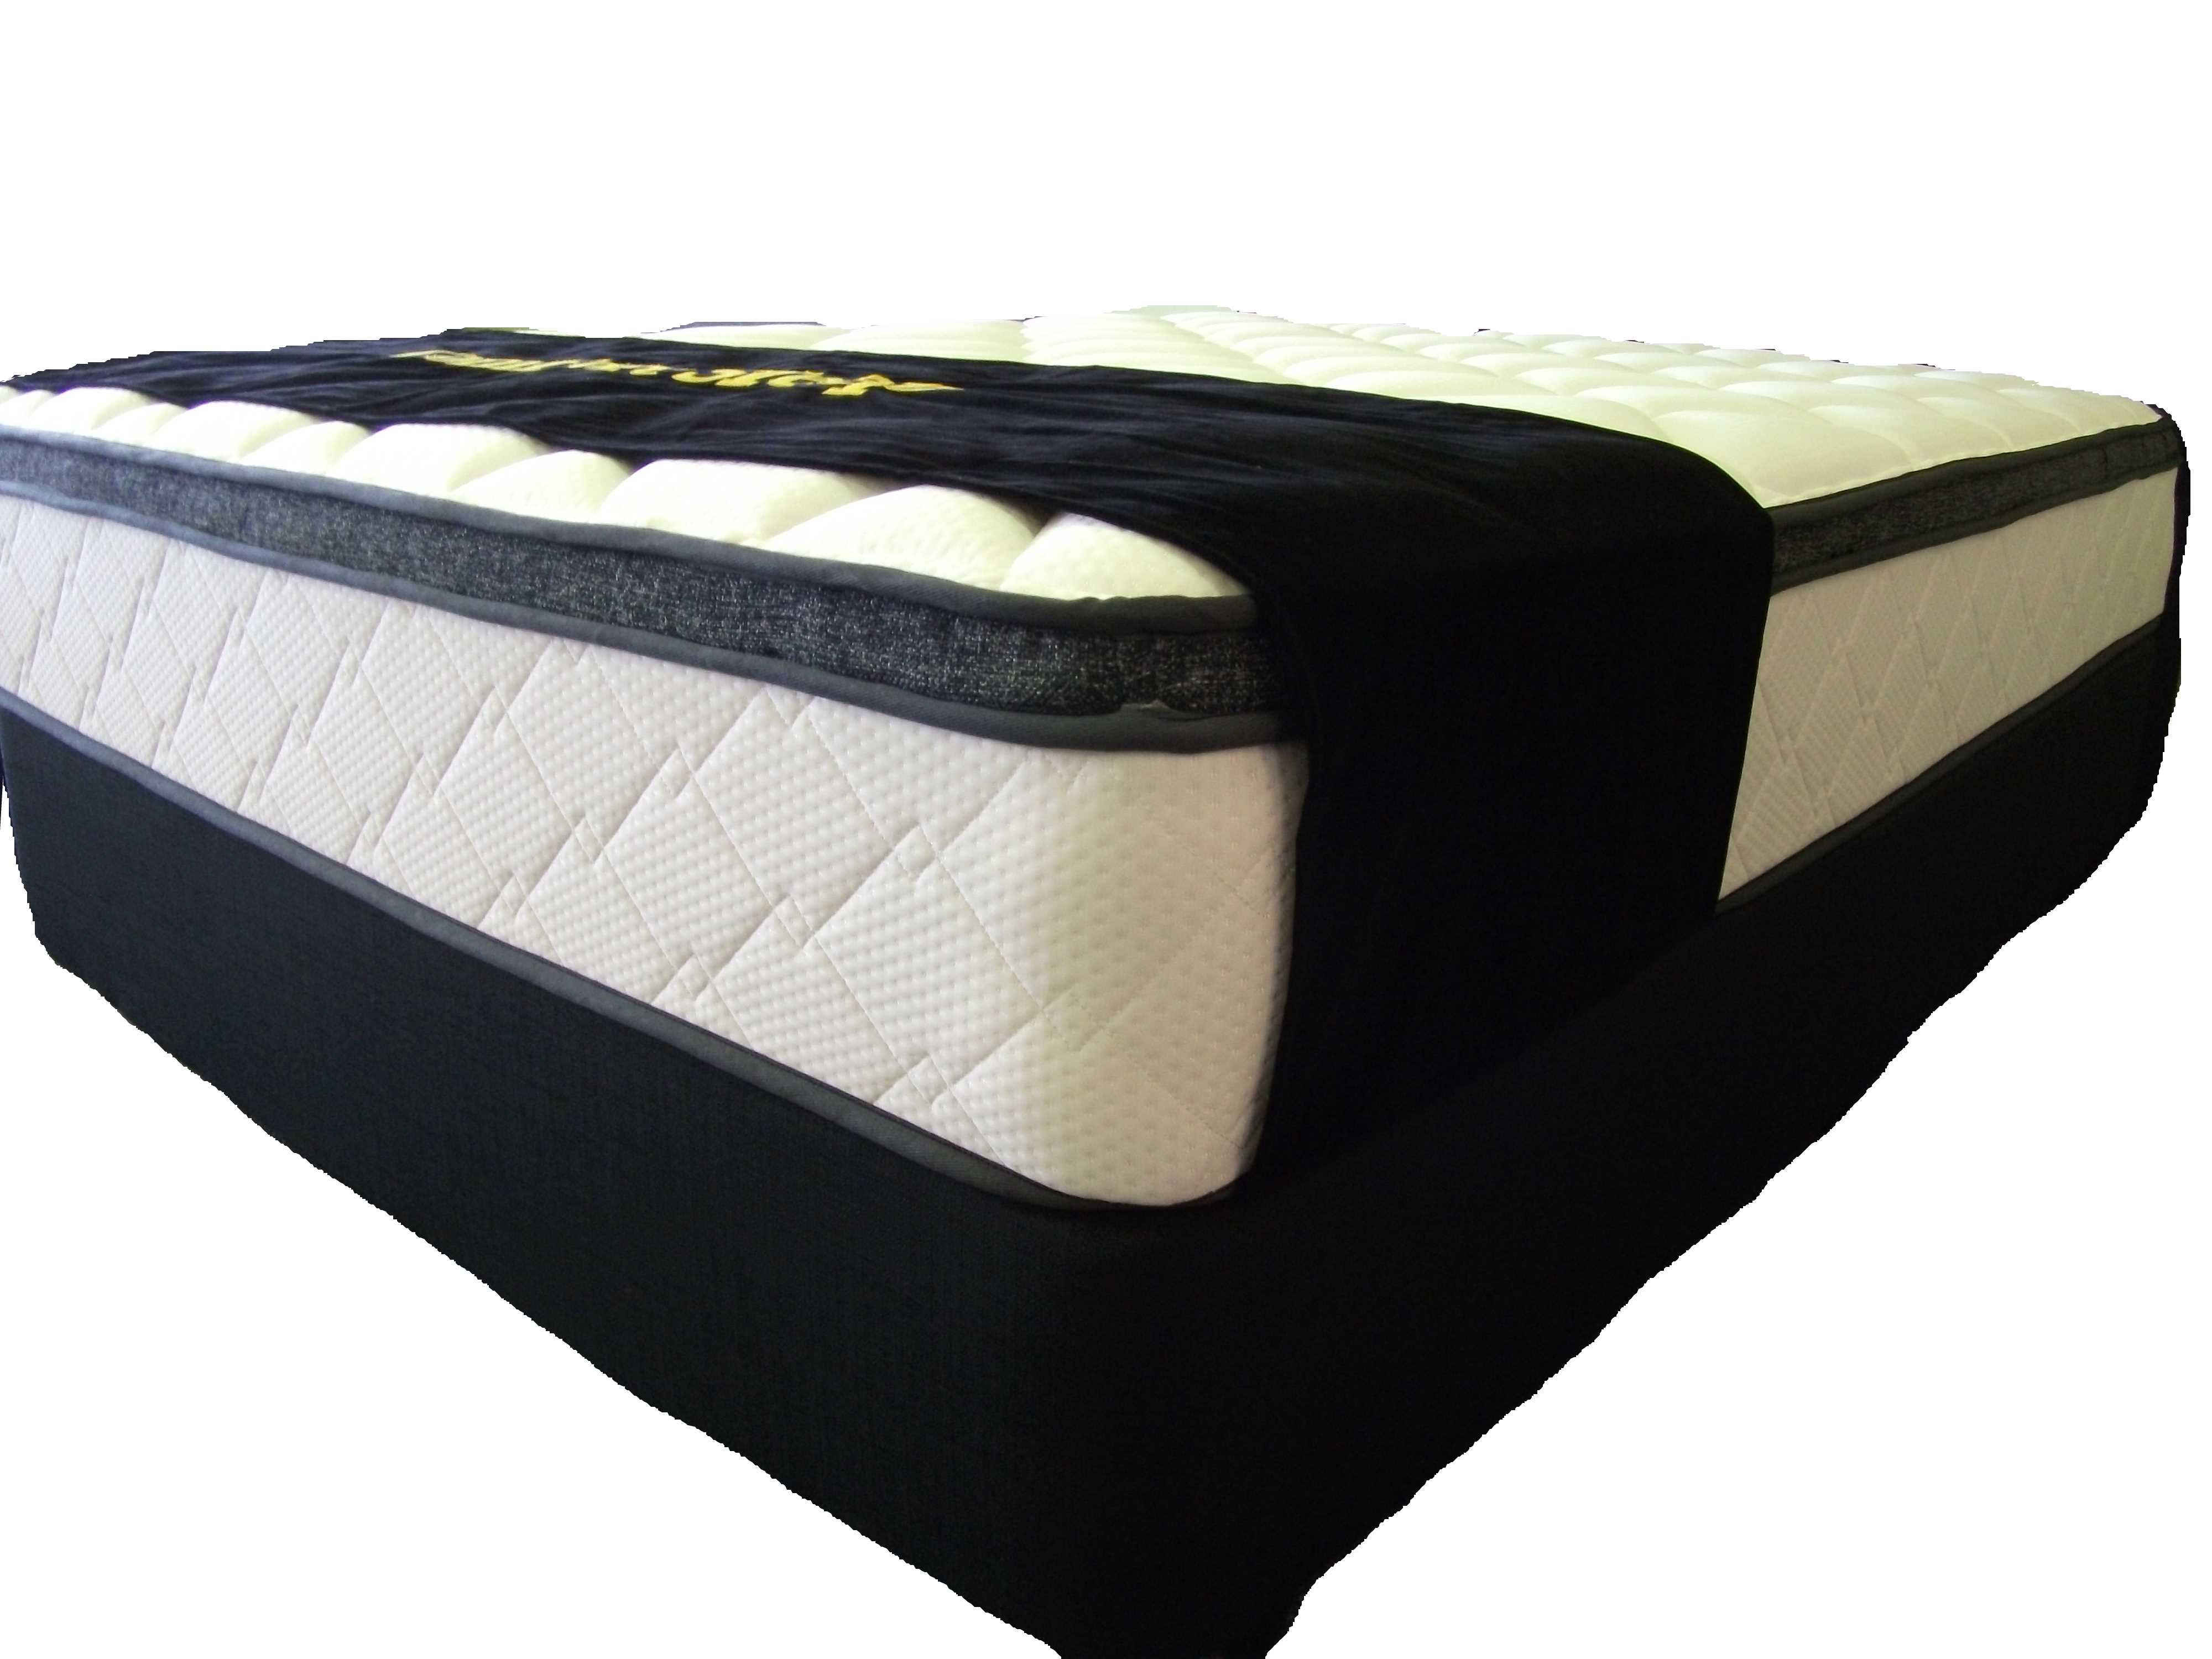 foam for mattress nz